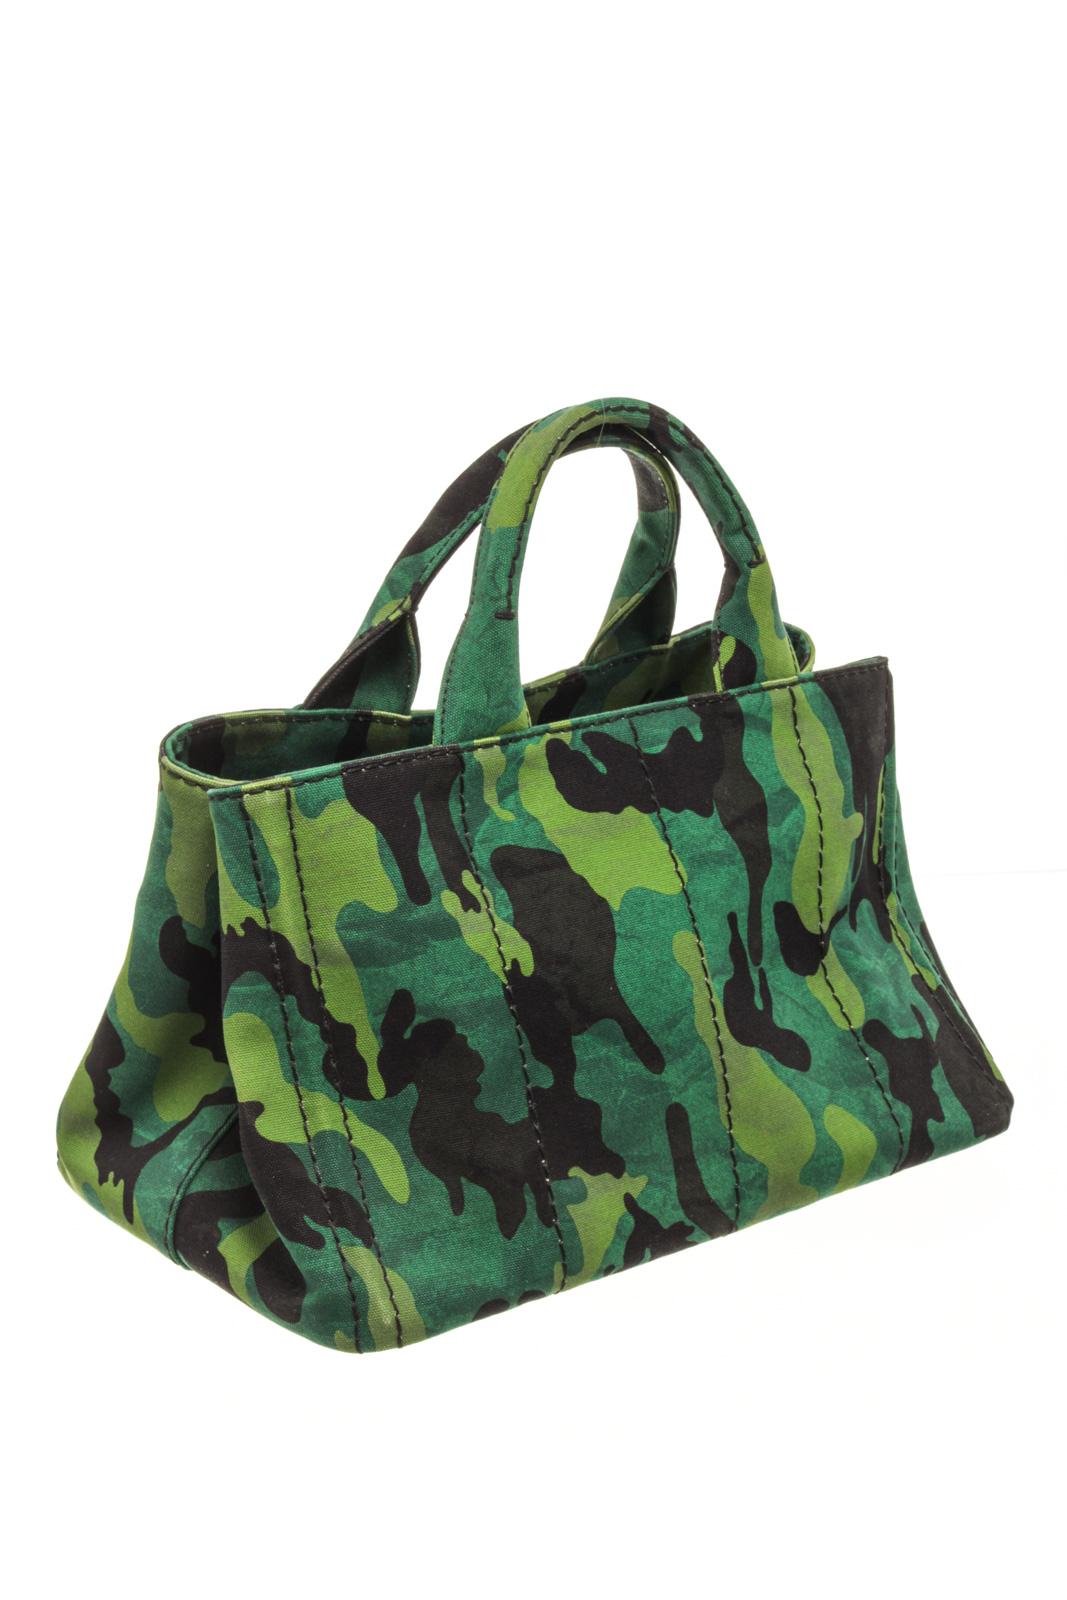 Prada Green Camo Canvas Canapa Tote Bag In Good Condition In Irvine, CA